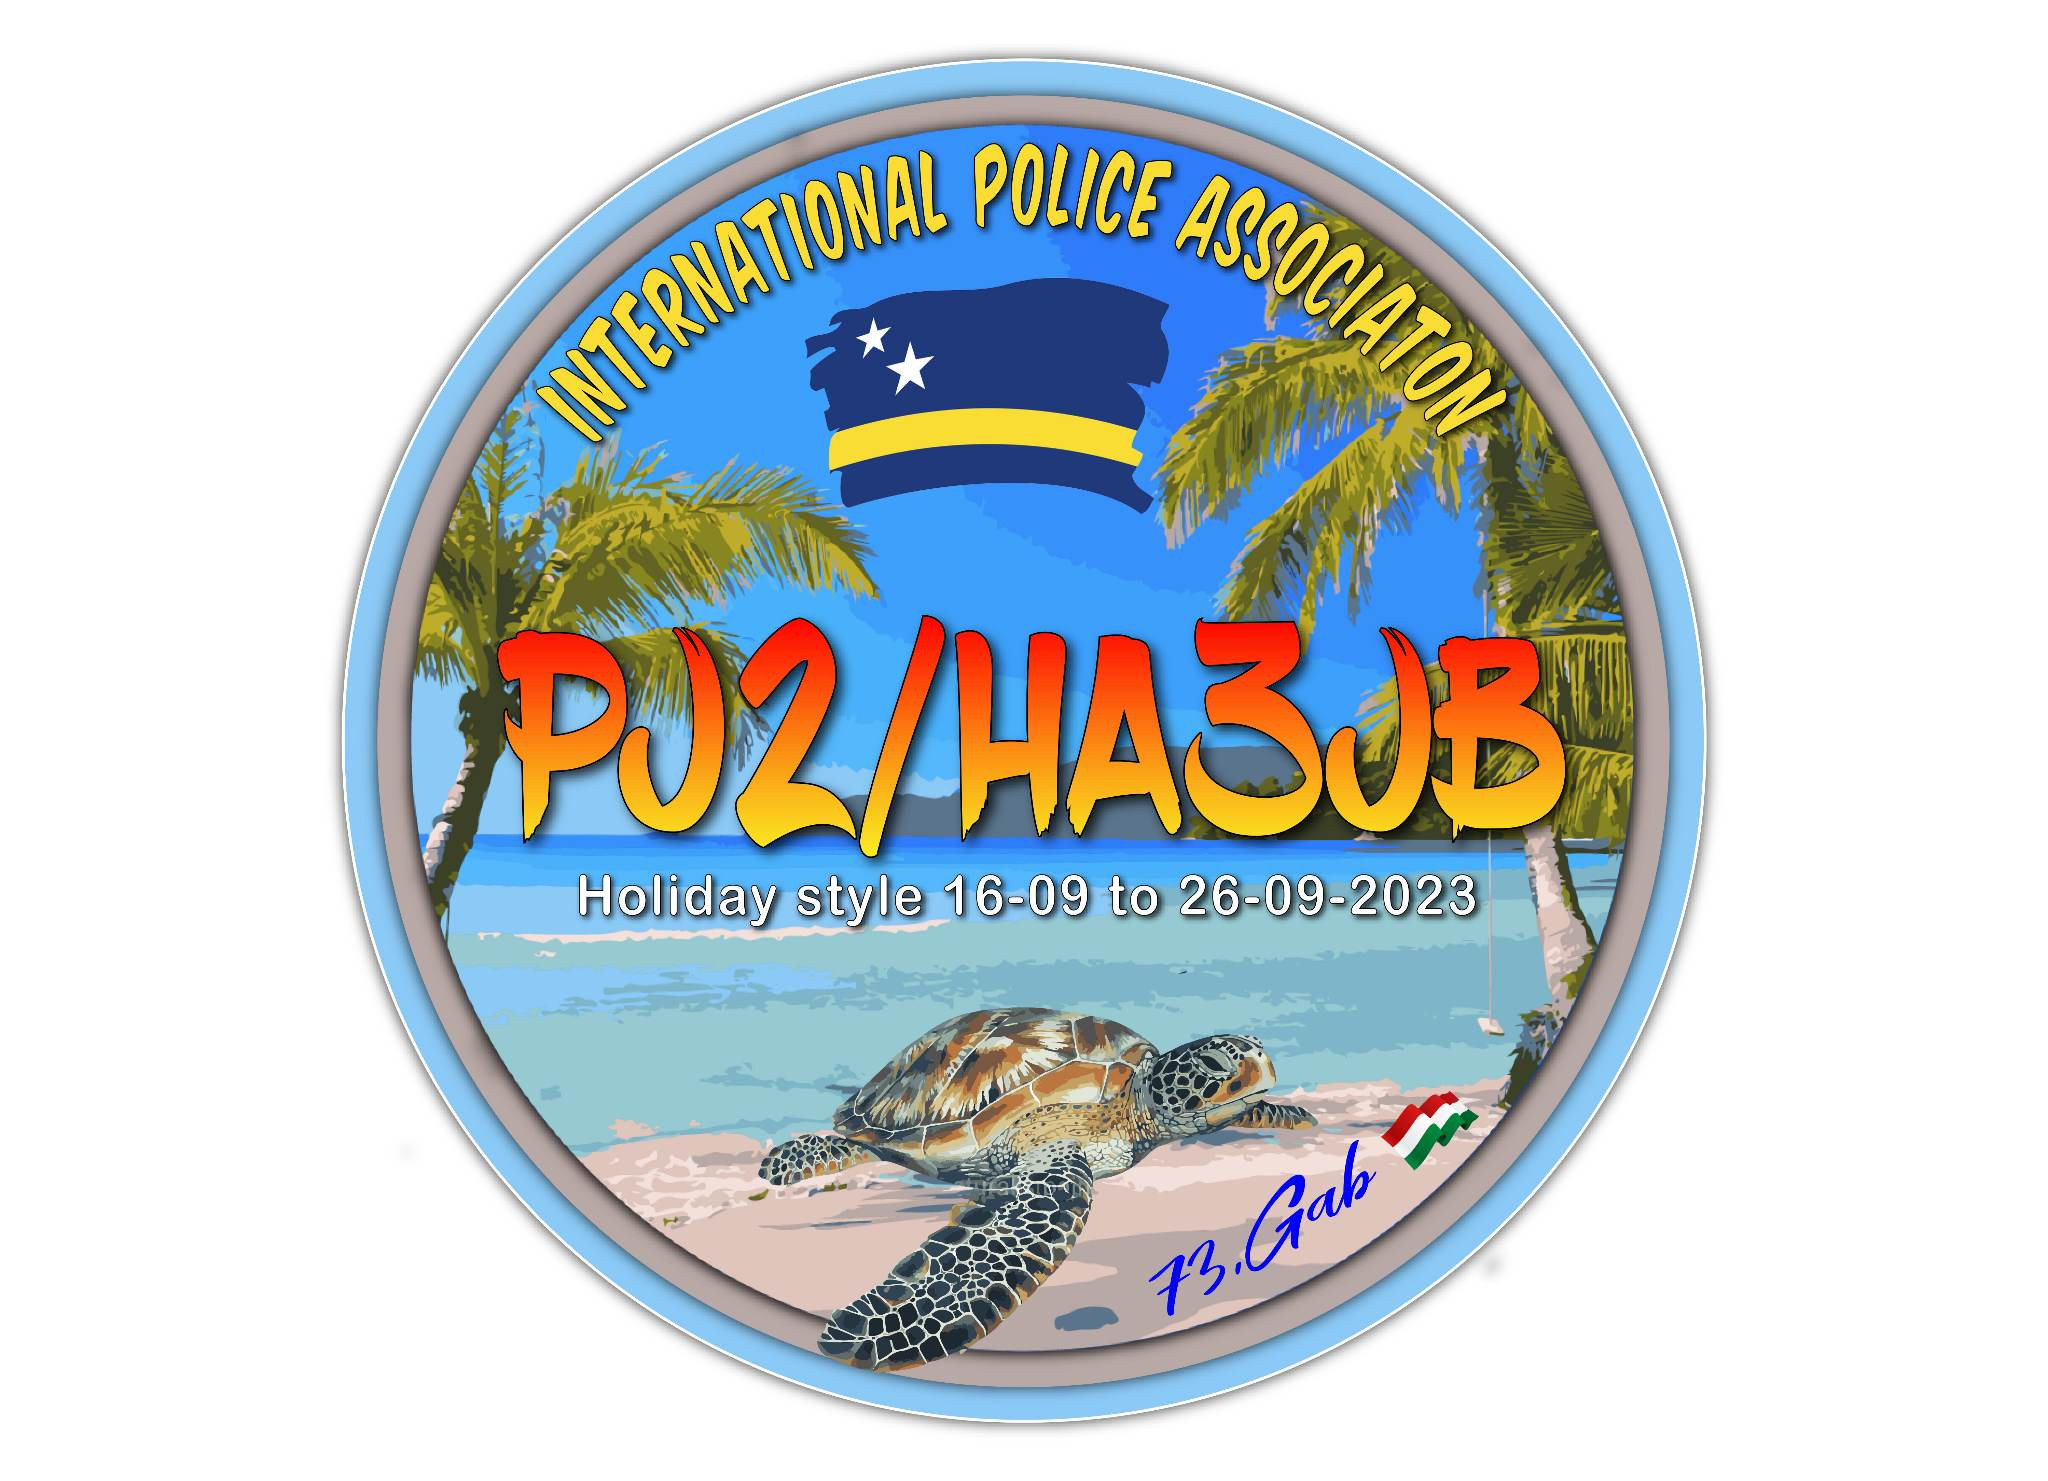 PJ2/HA3JB Curacao Island